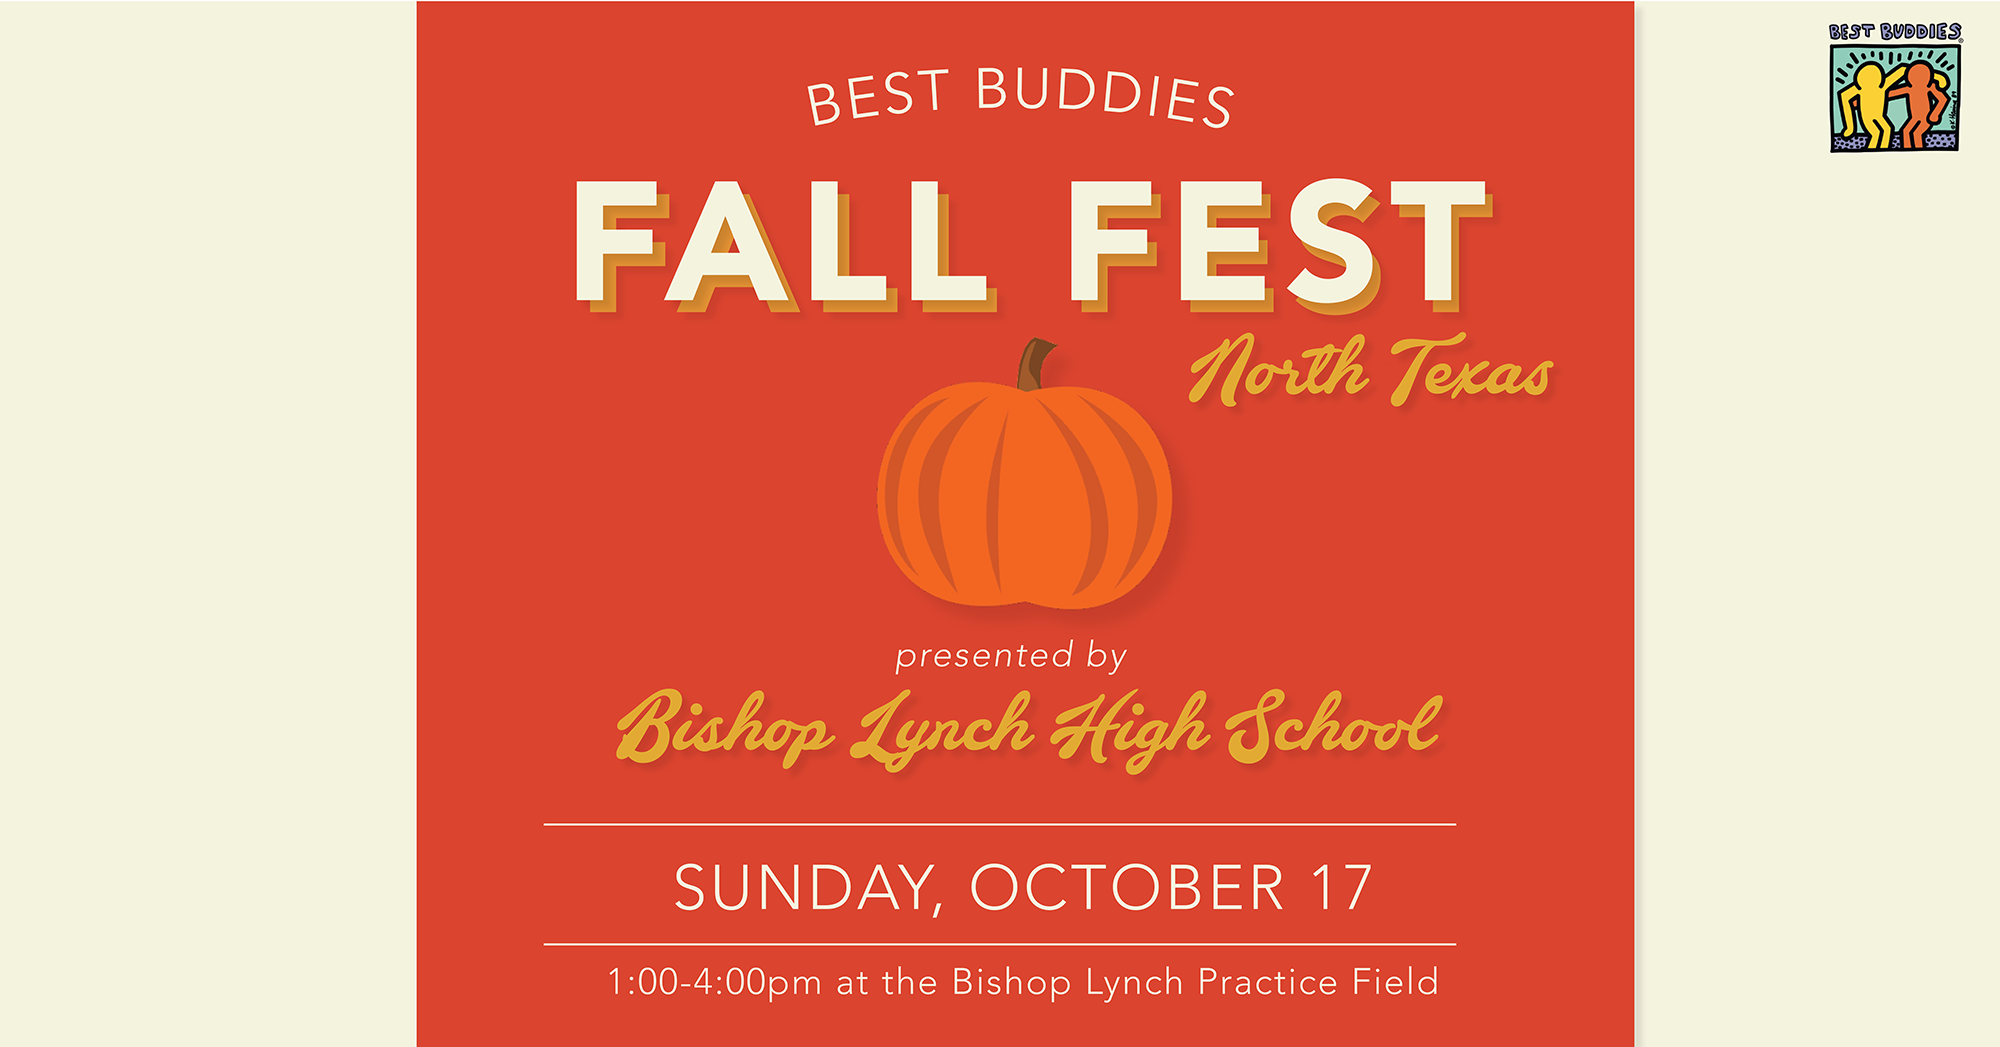 North Texas Fall Fest logo